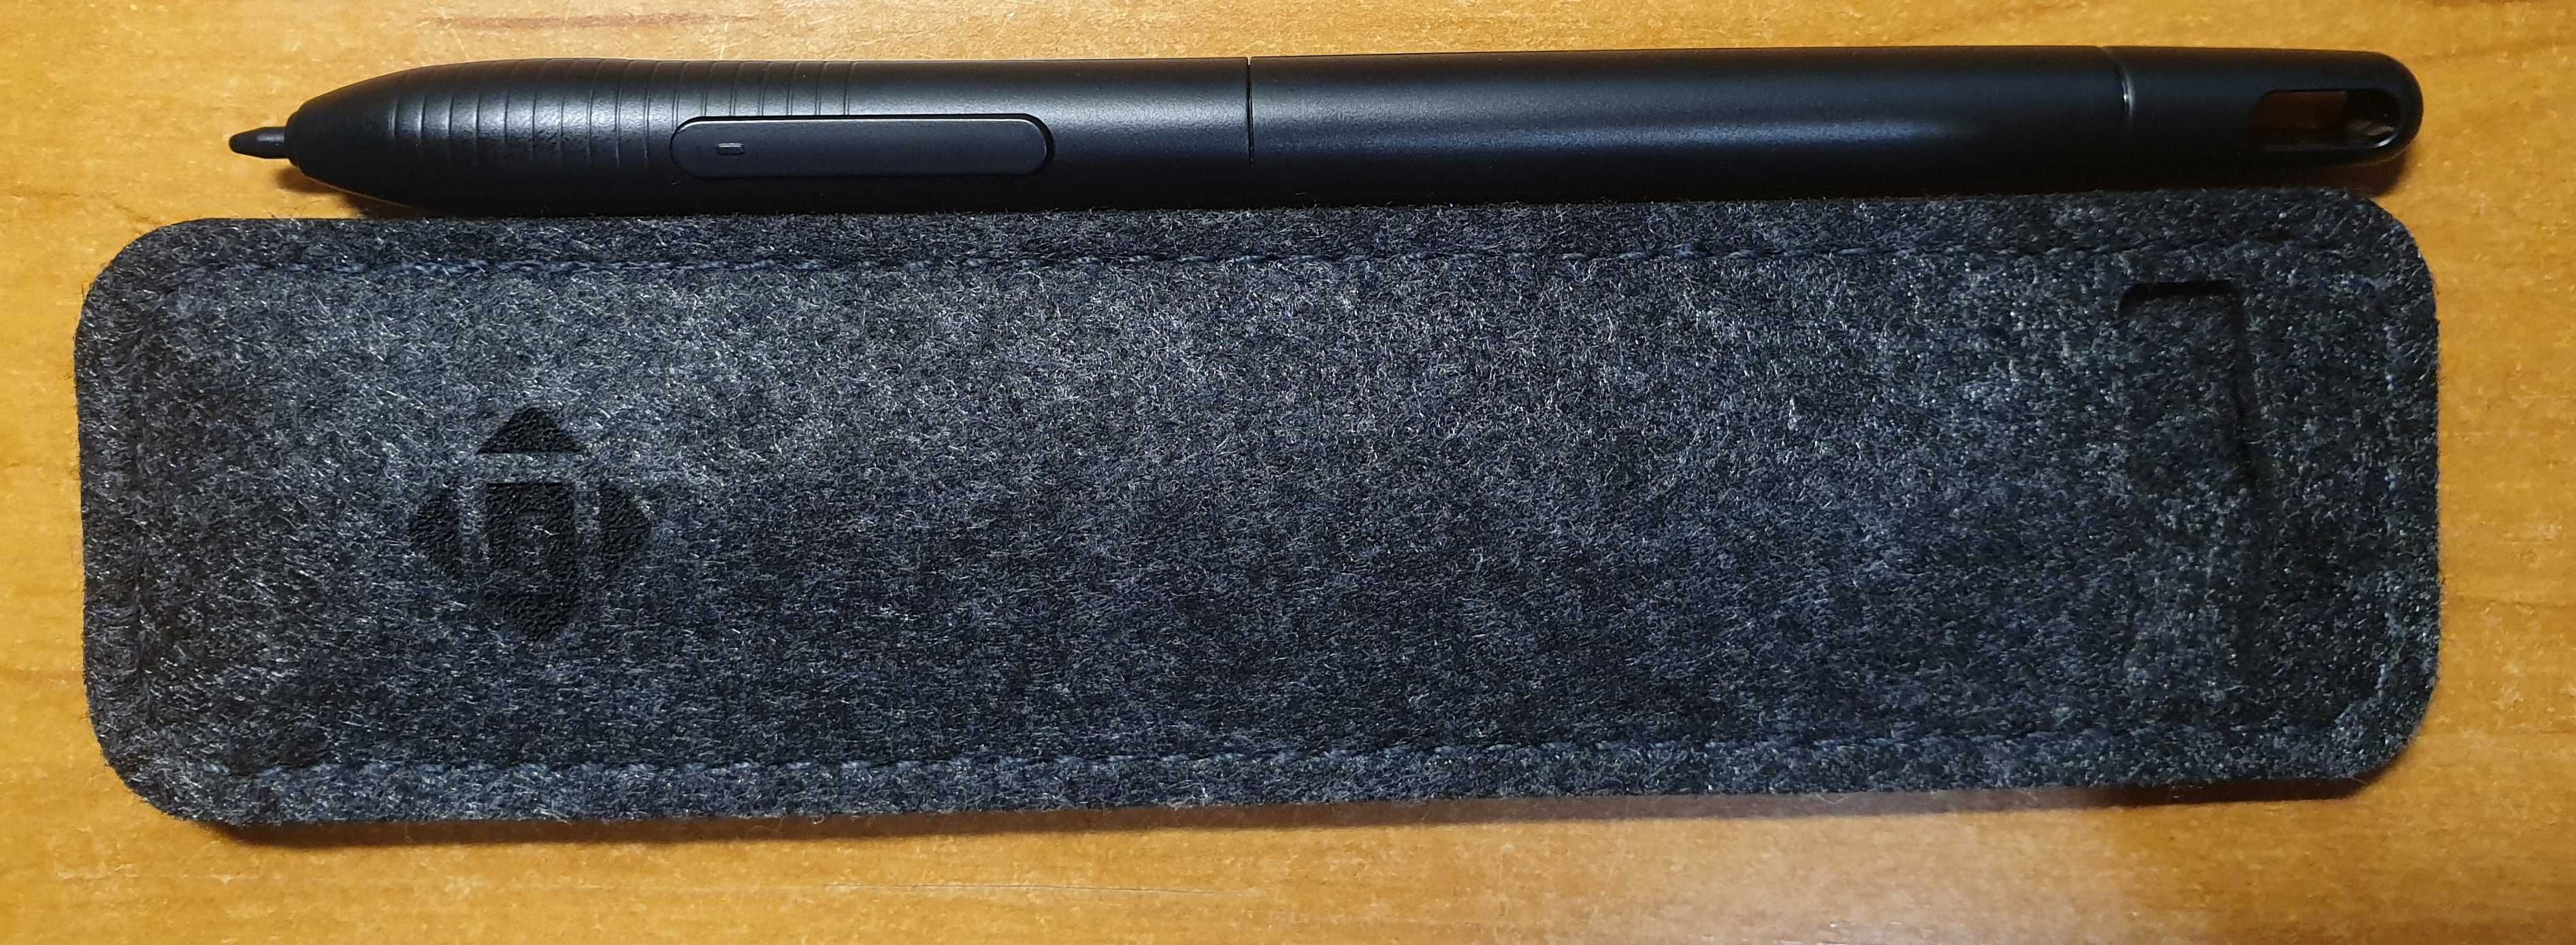 Nowy rysik długopis pióro ArtPaint AP31 do tabletu Gaomon M10K 2018